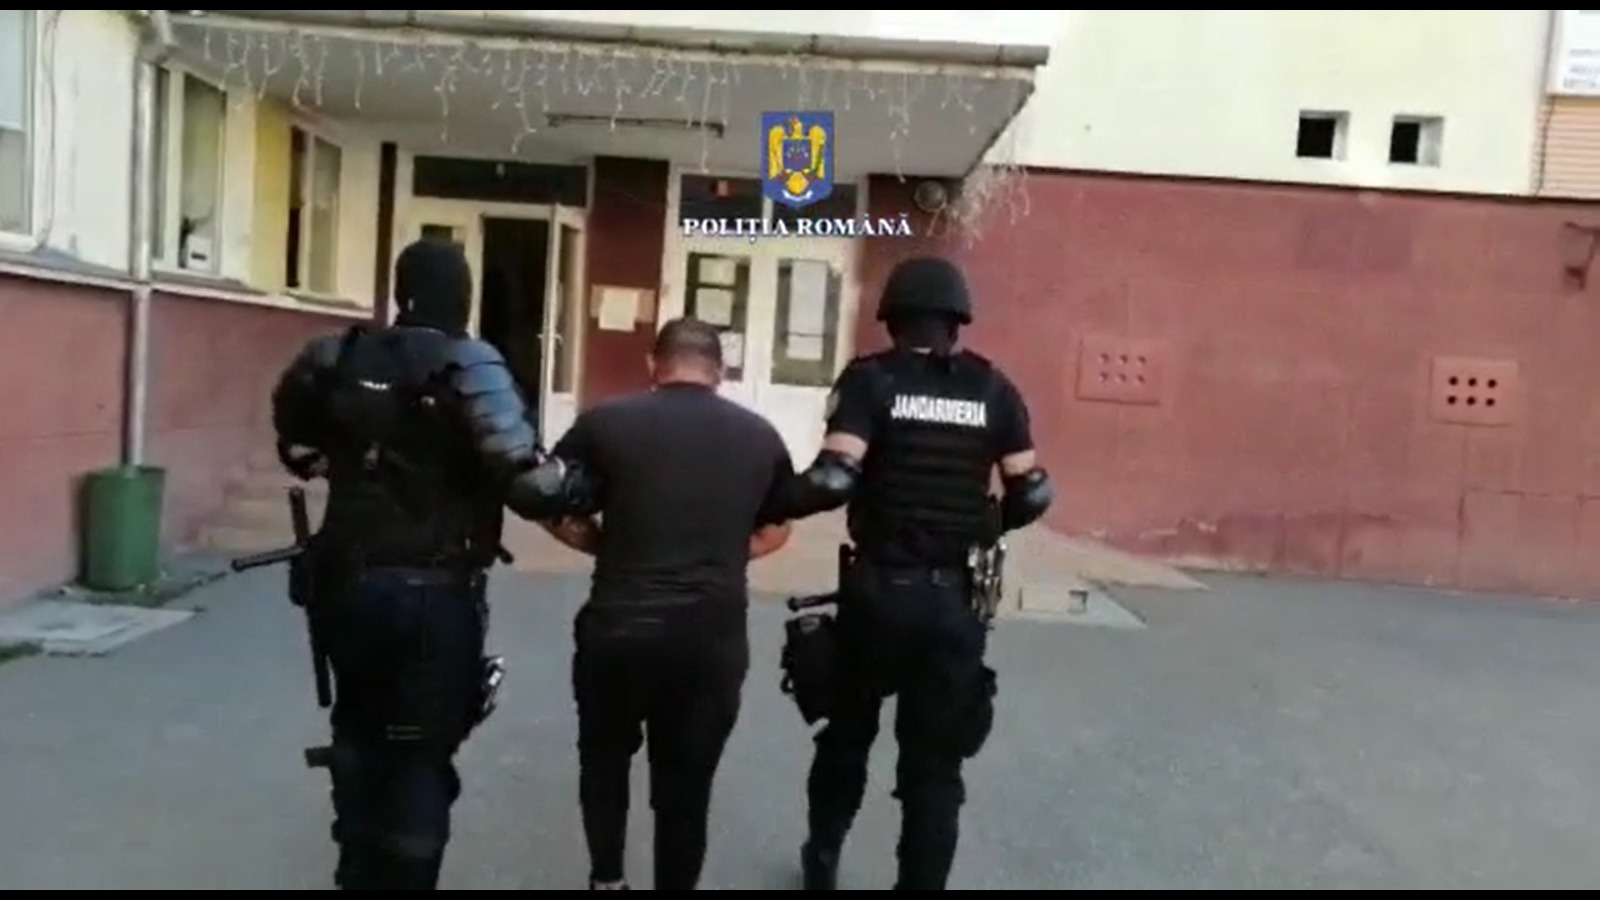 Tânărul a fost arestat preventiv/ Foto: captură ecran video